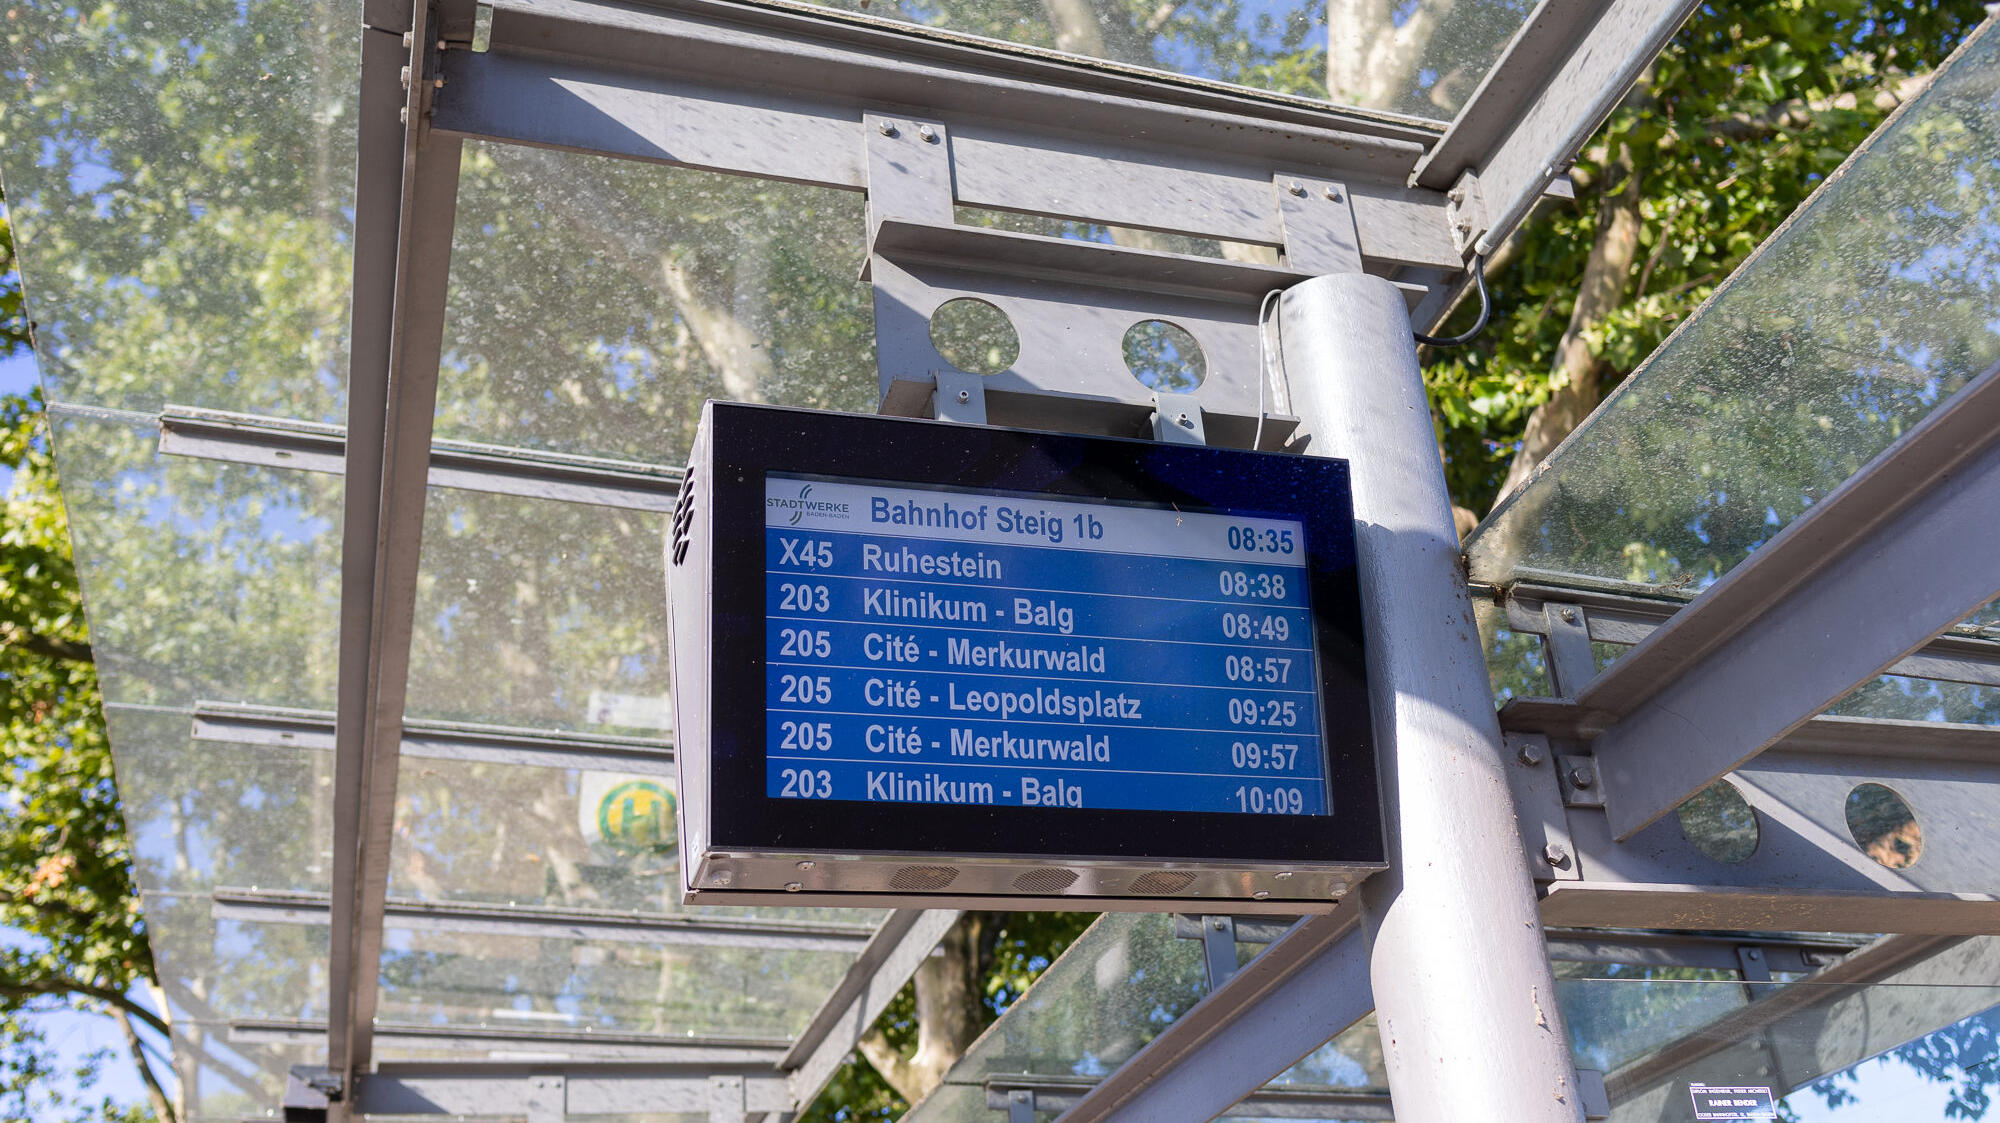 Das Bild zeigt eine elektronische Fahrplanauskunft.